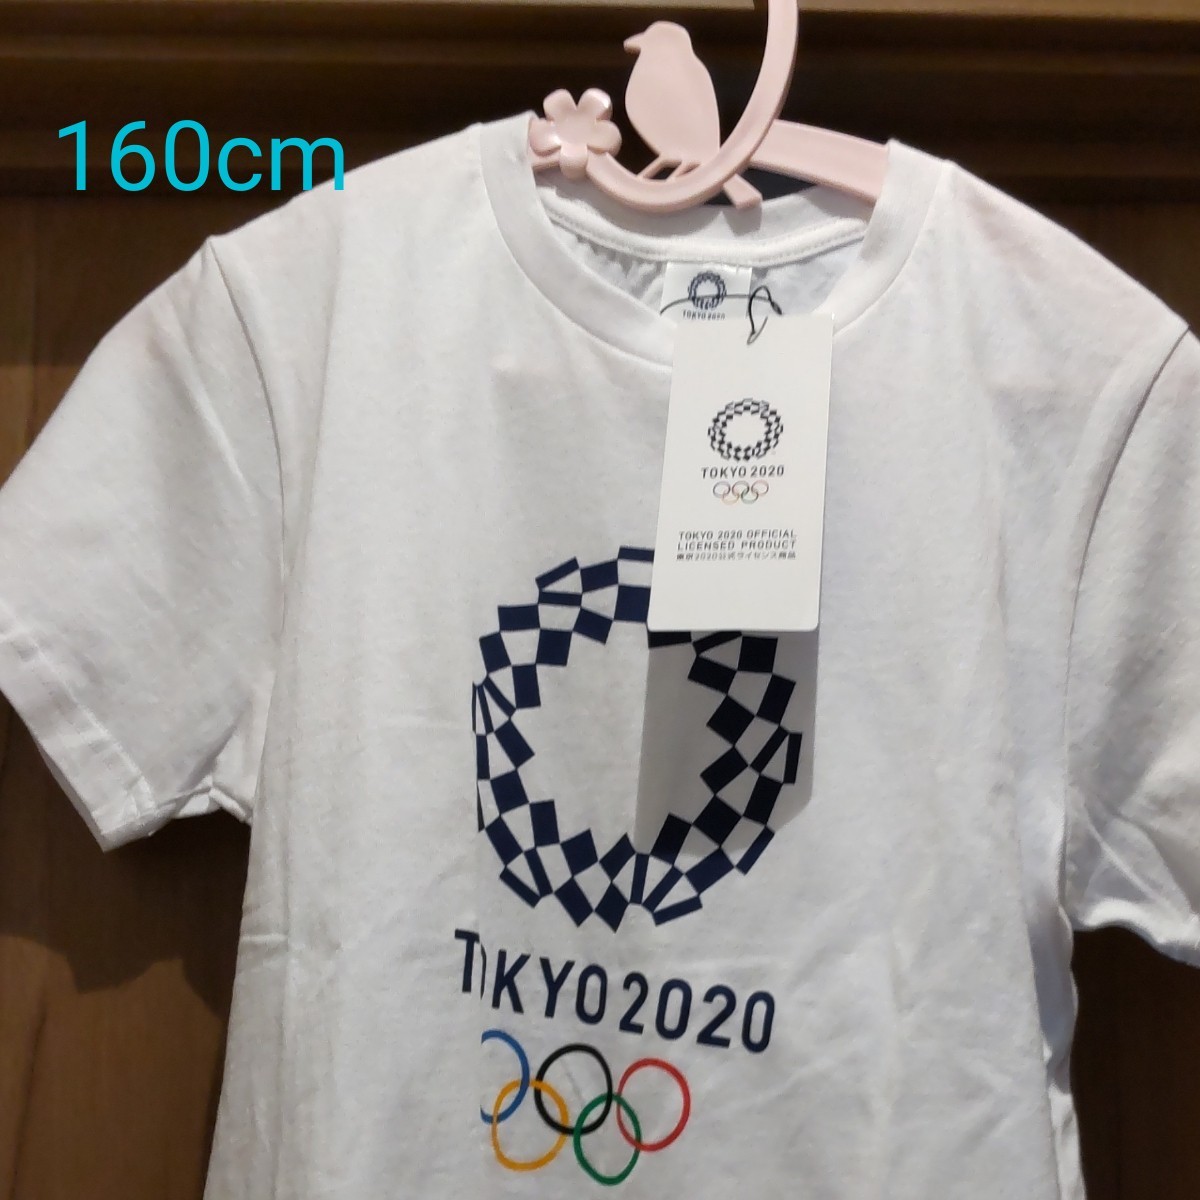 新品 タグ付き 東京2020 オリンピック Tシャツ 160cm 公式ライセンス商品 キッズ 記念